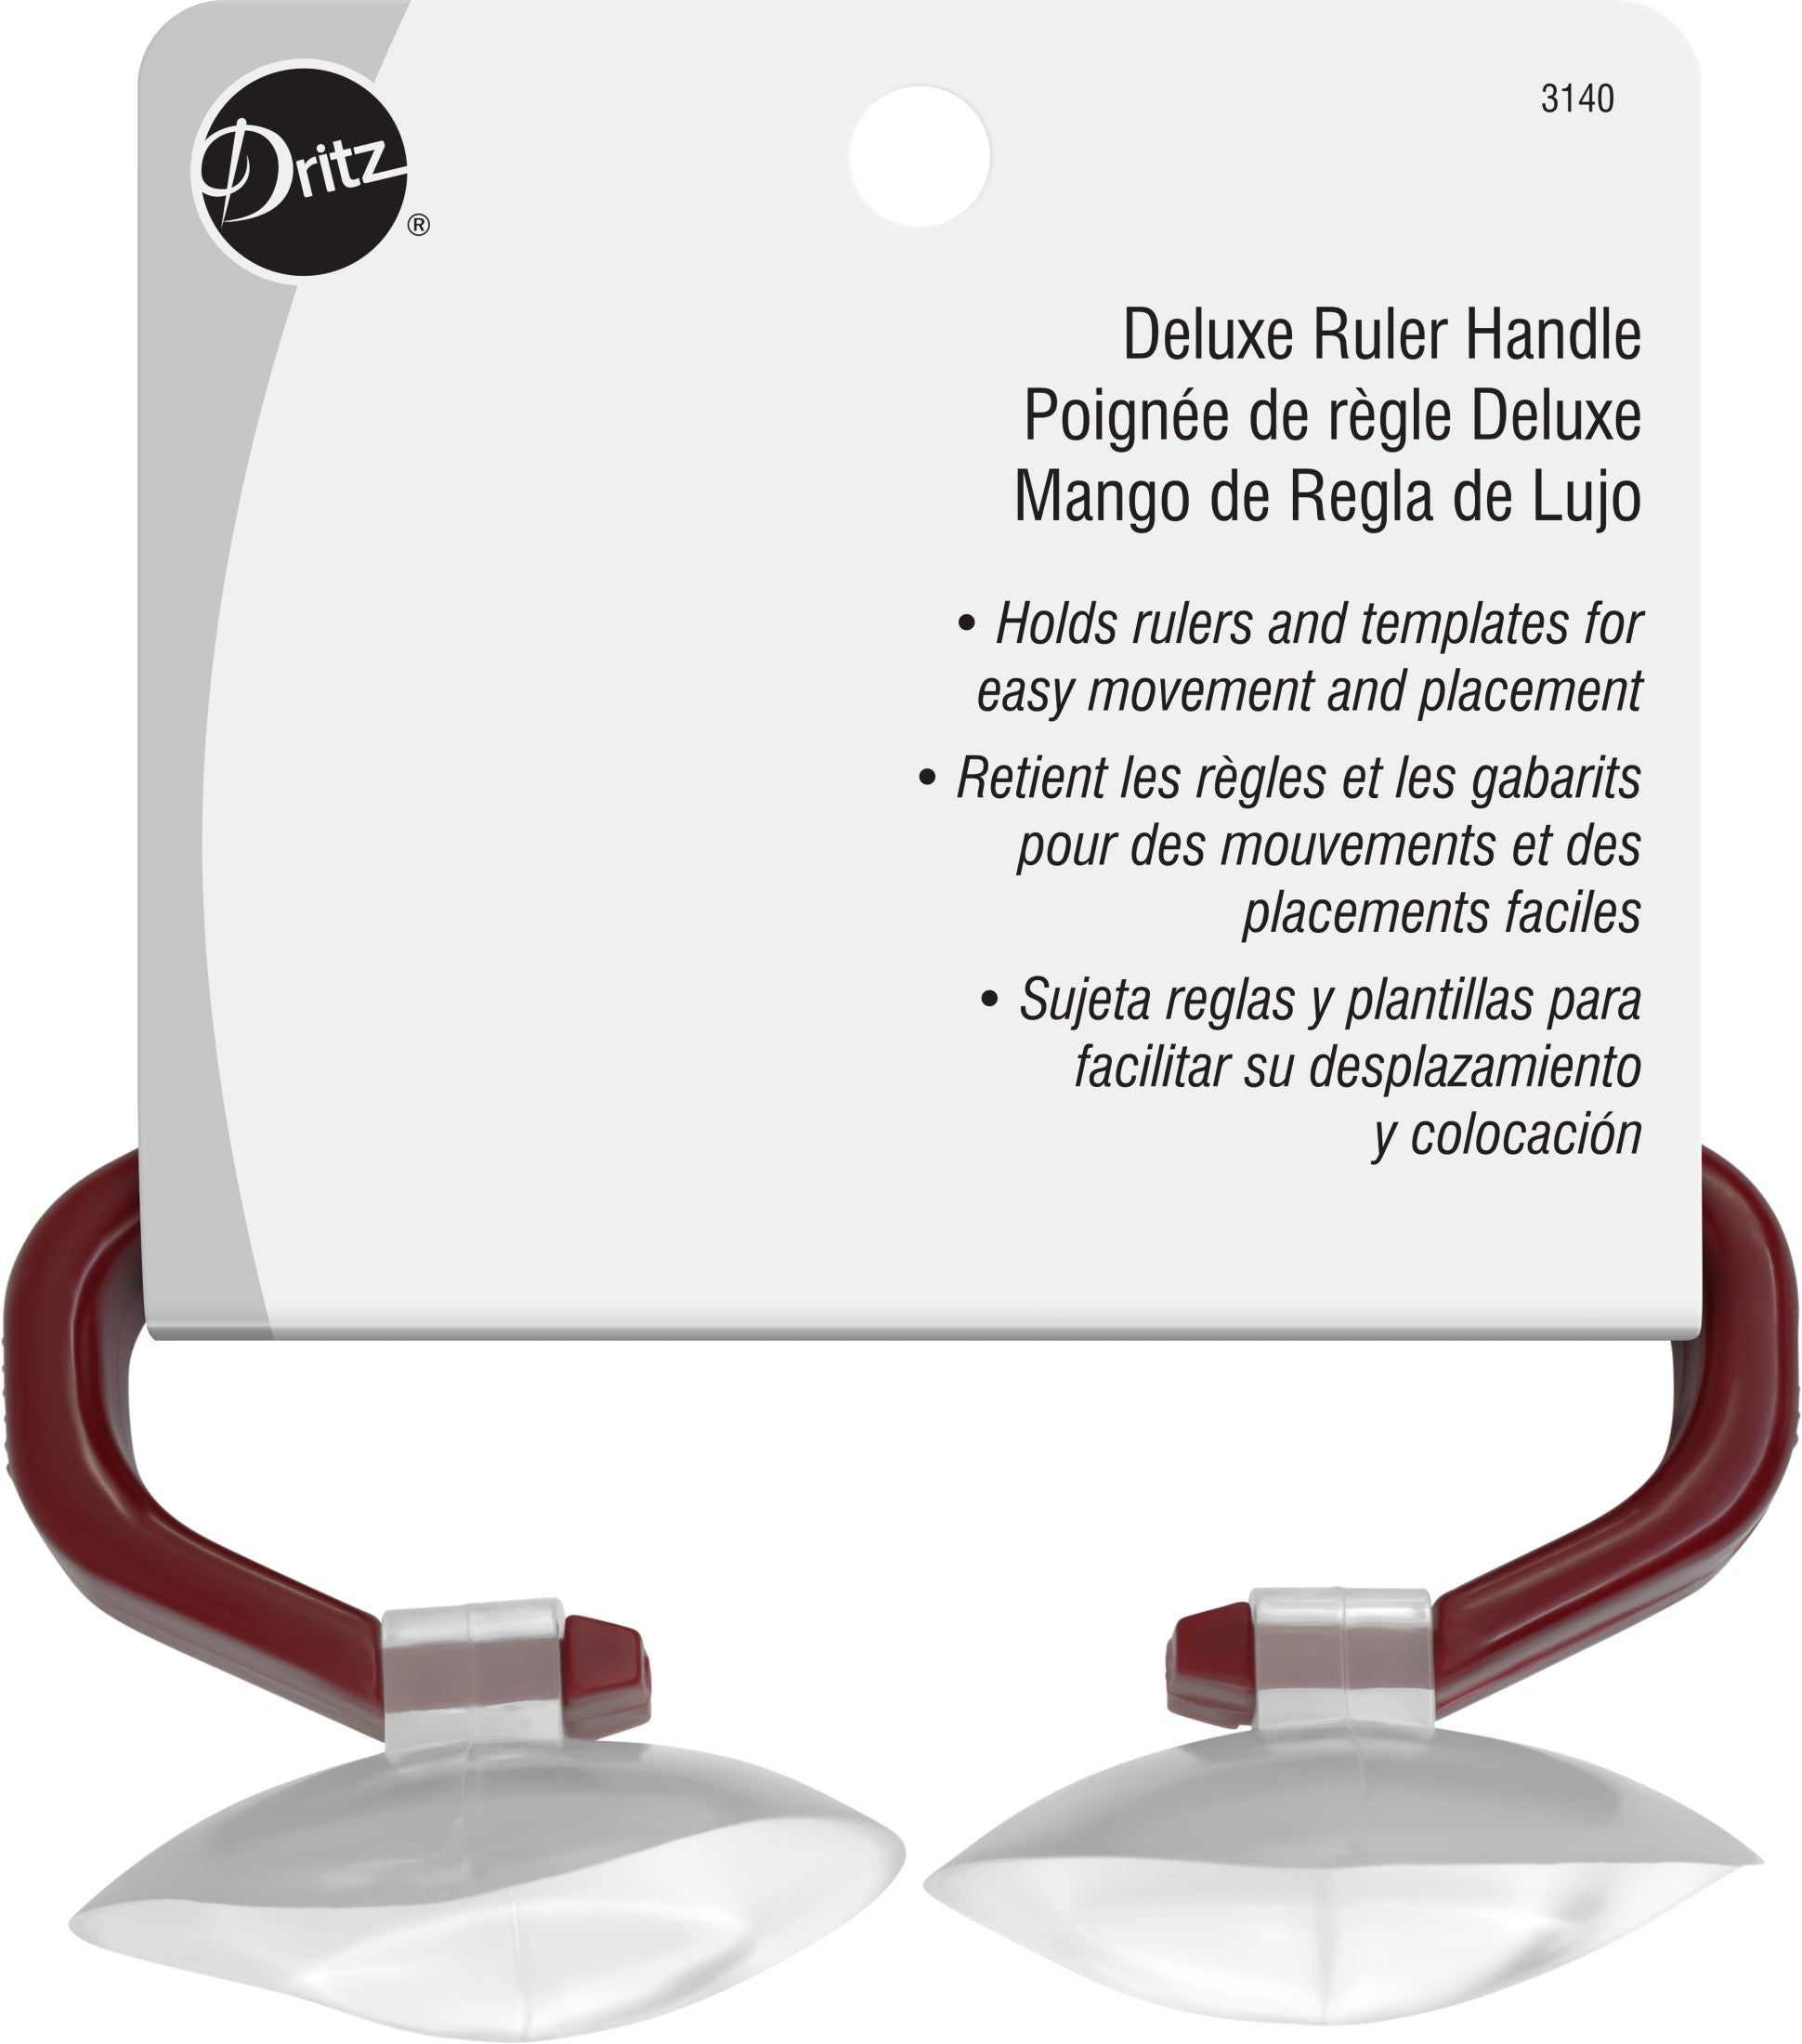 Dritz Deluxe Ruler Handle